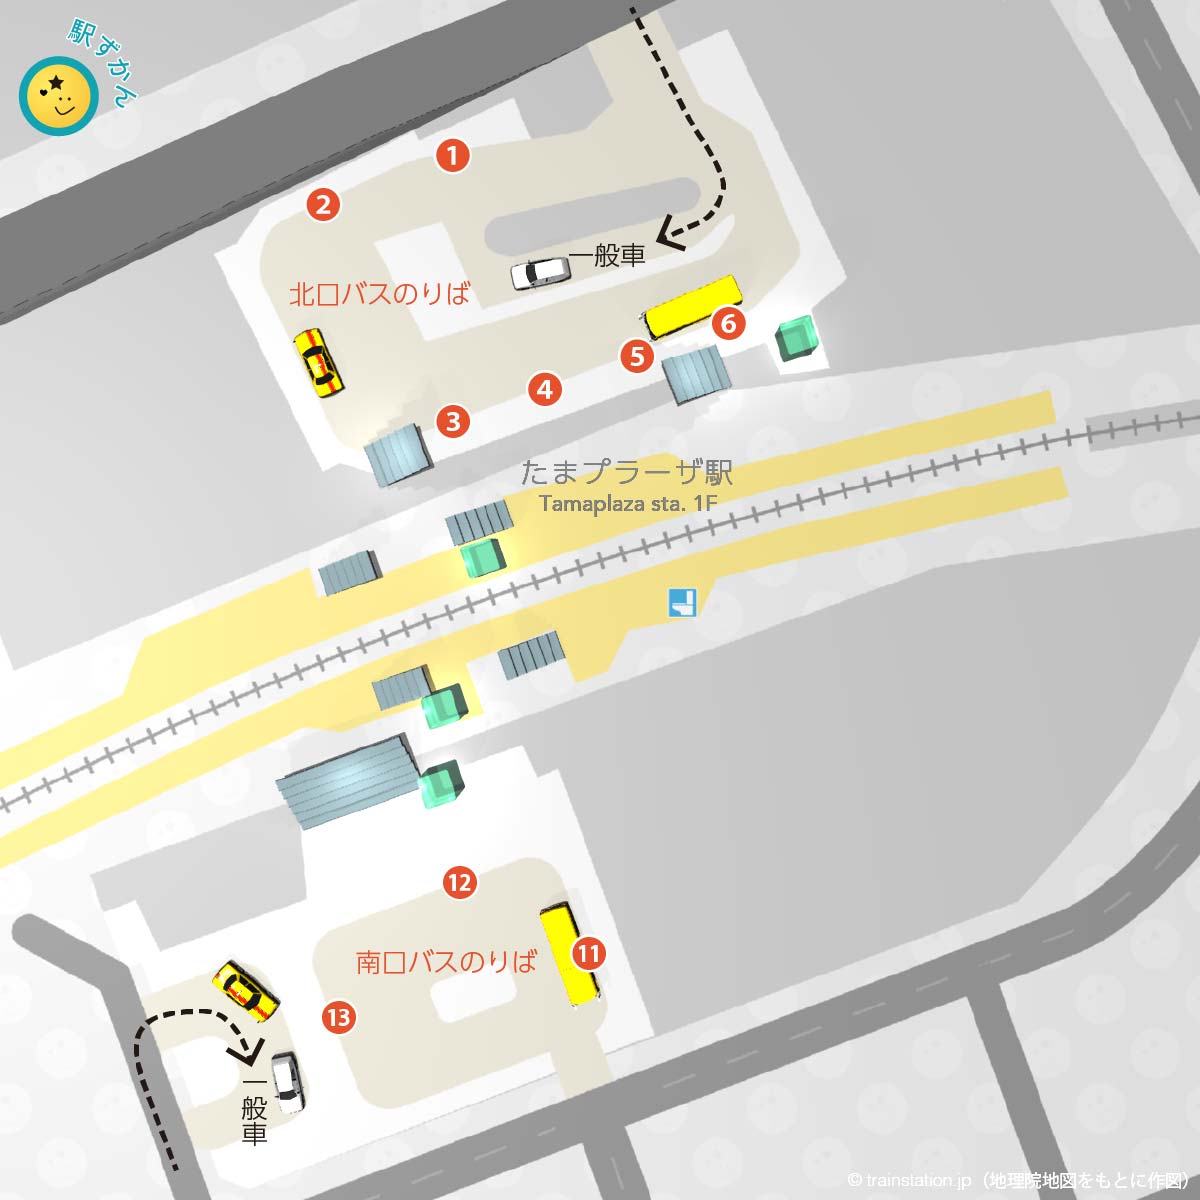 たまプラーザ駅ロータリーバス乗り場と一般車寄せマップ